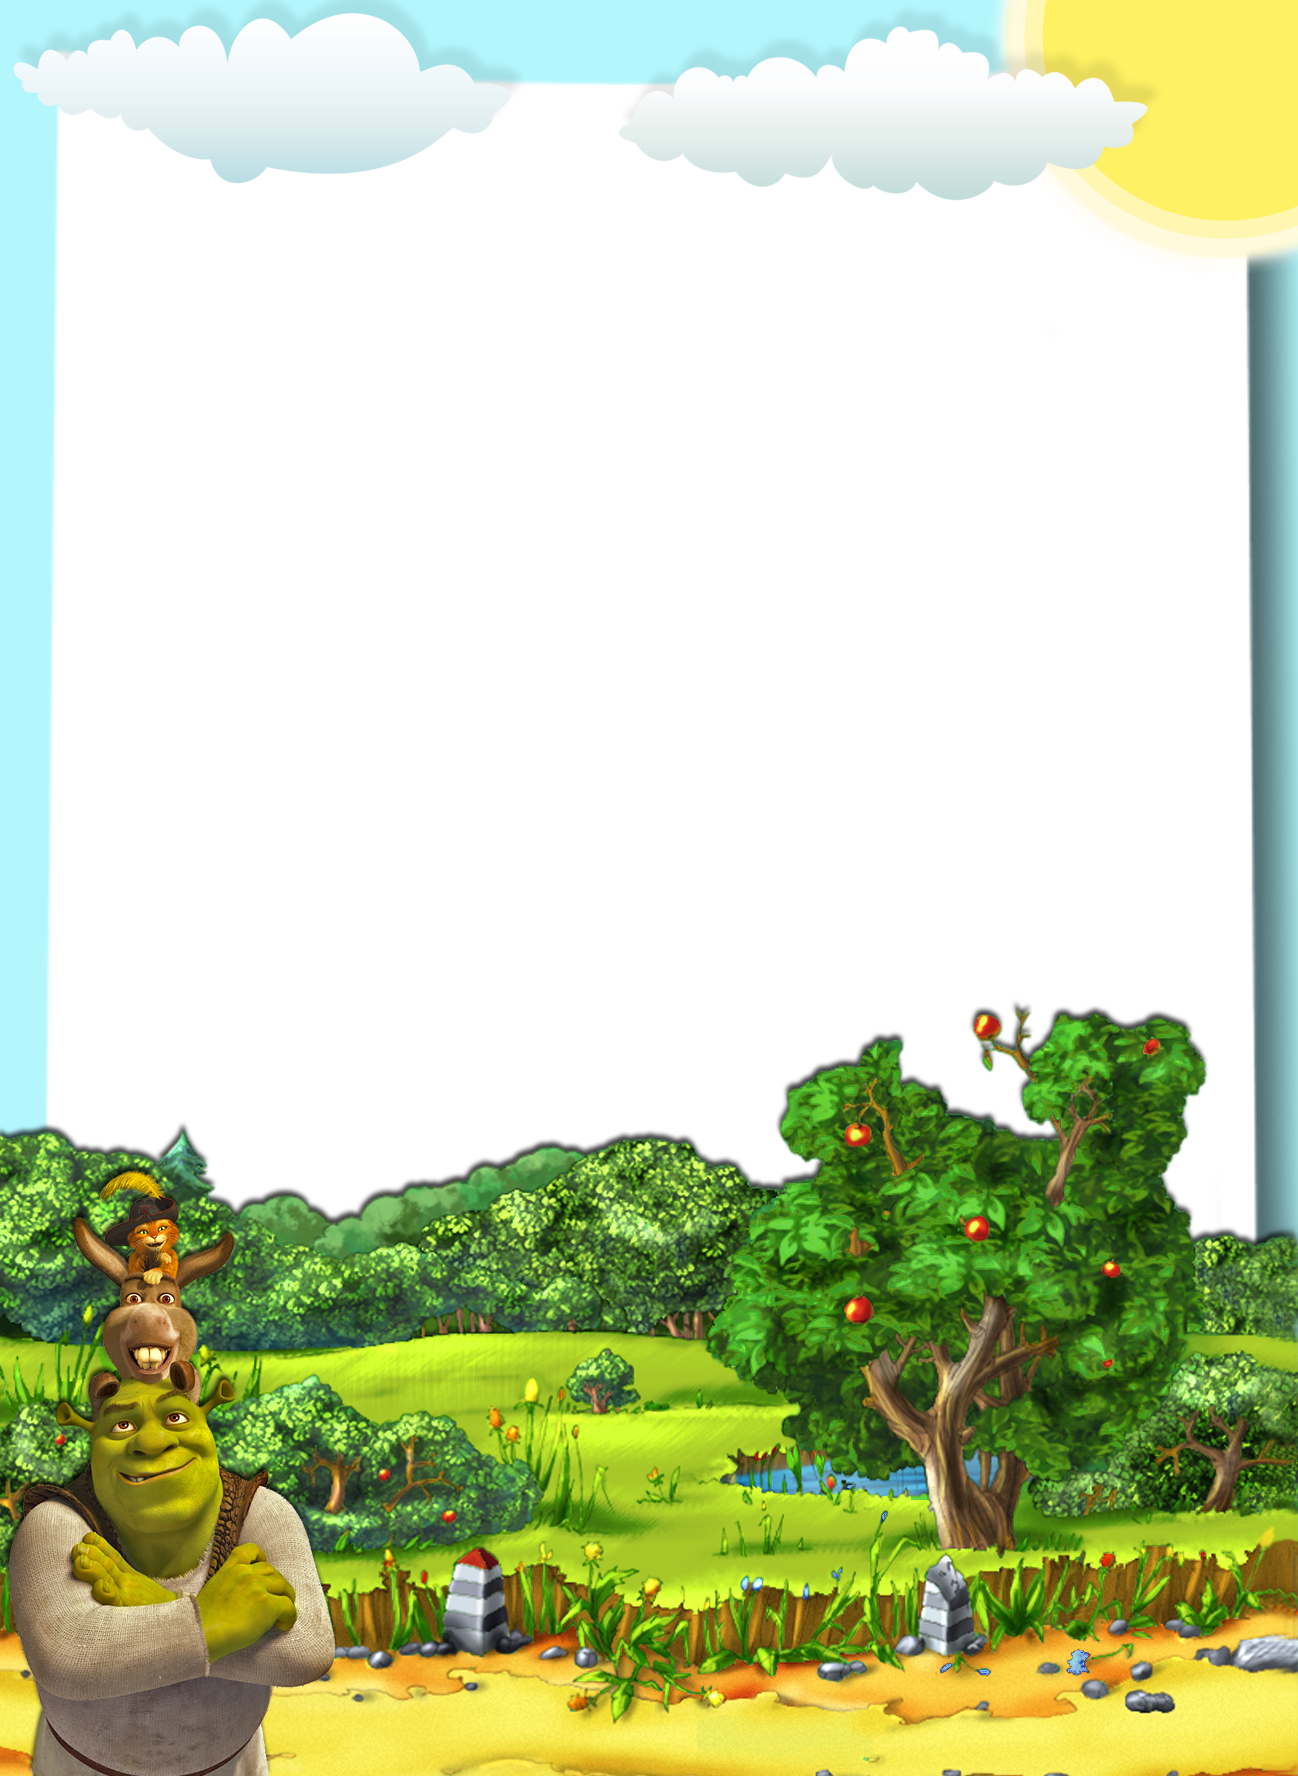 Shrek Frame Png Transparent PNG - 2550x3300 - Free Download on NicePNG